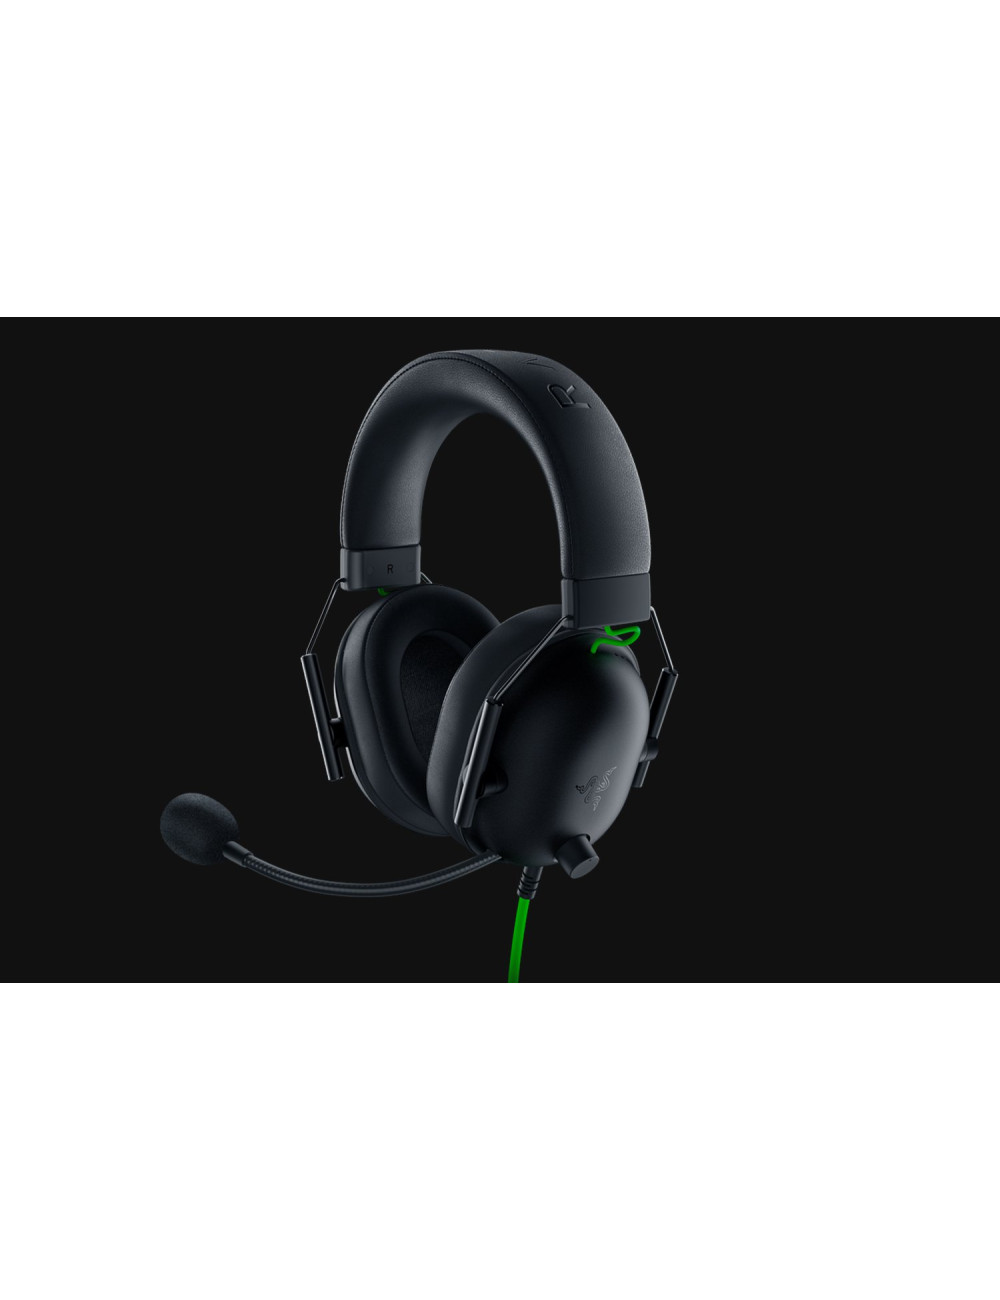 Razer Gaming Headset BlackShark V2 X Wired Over-Ear